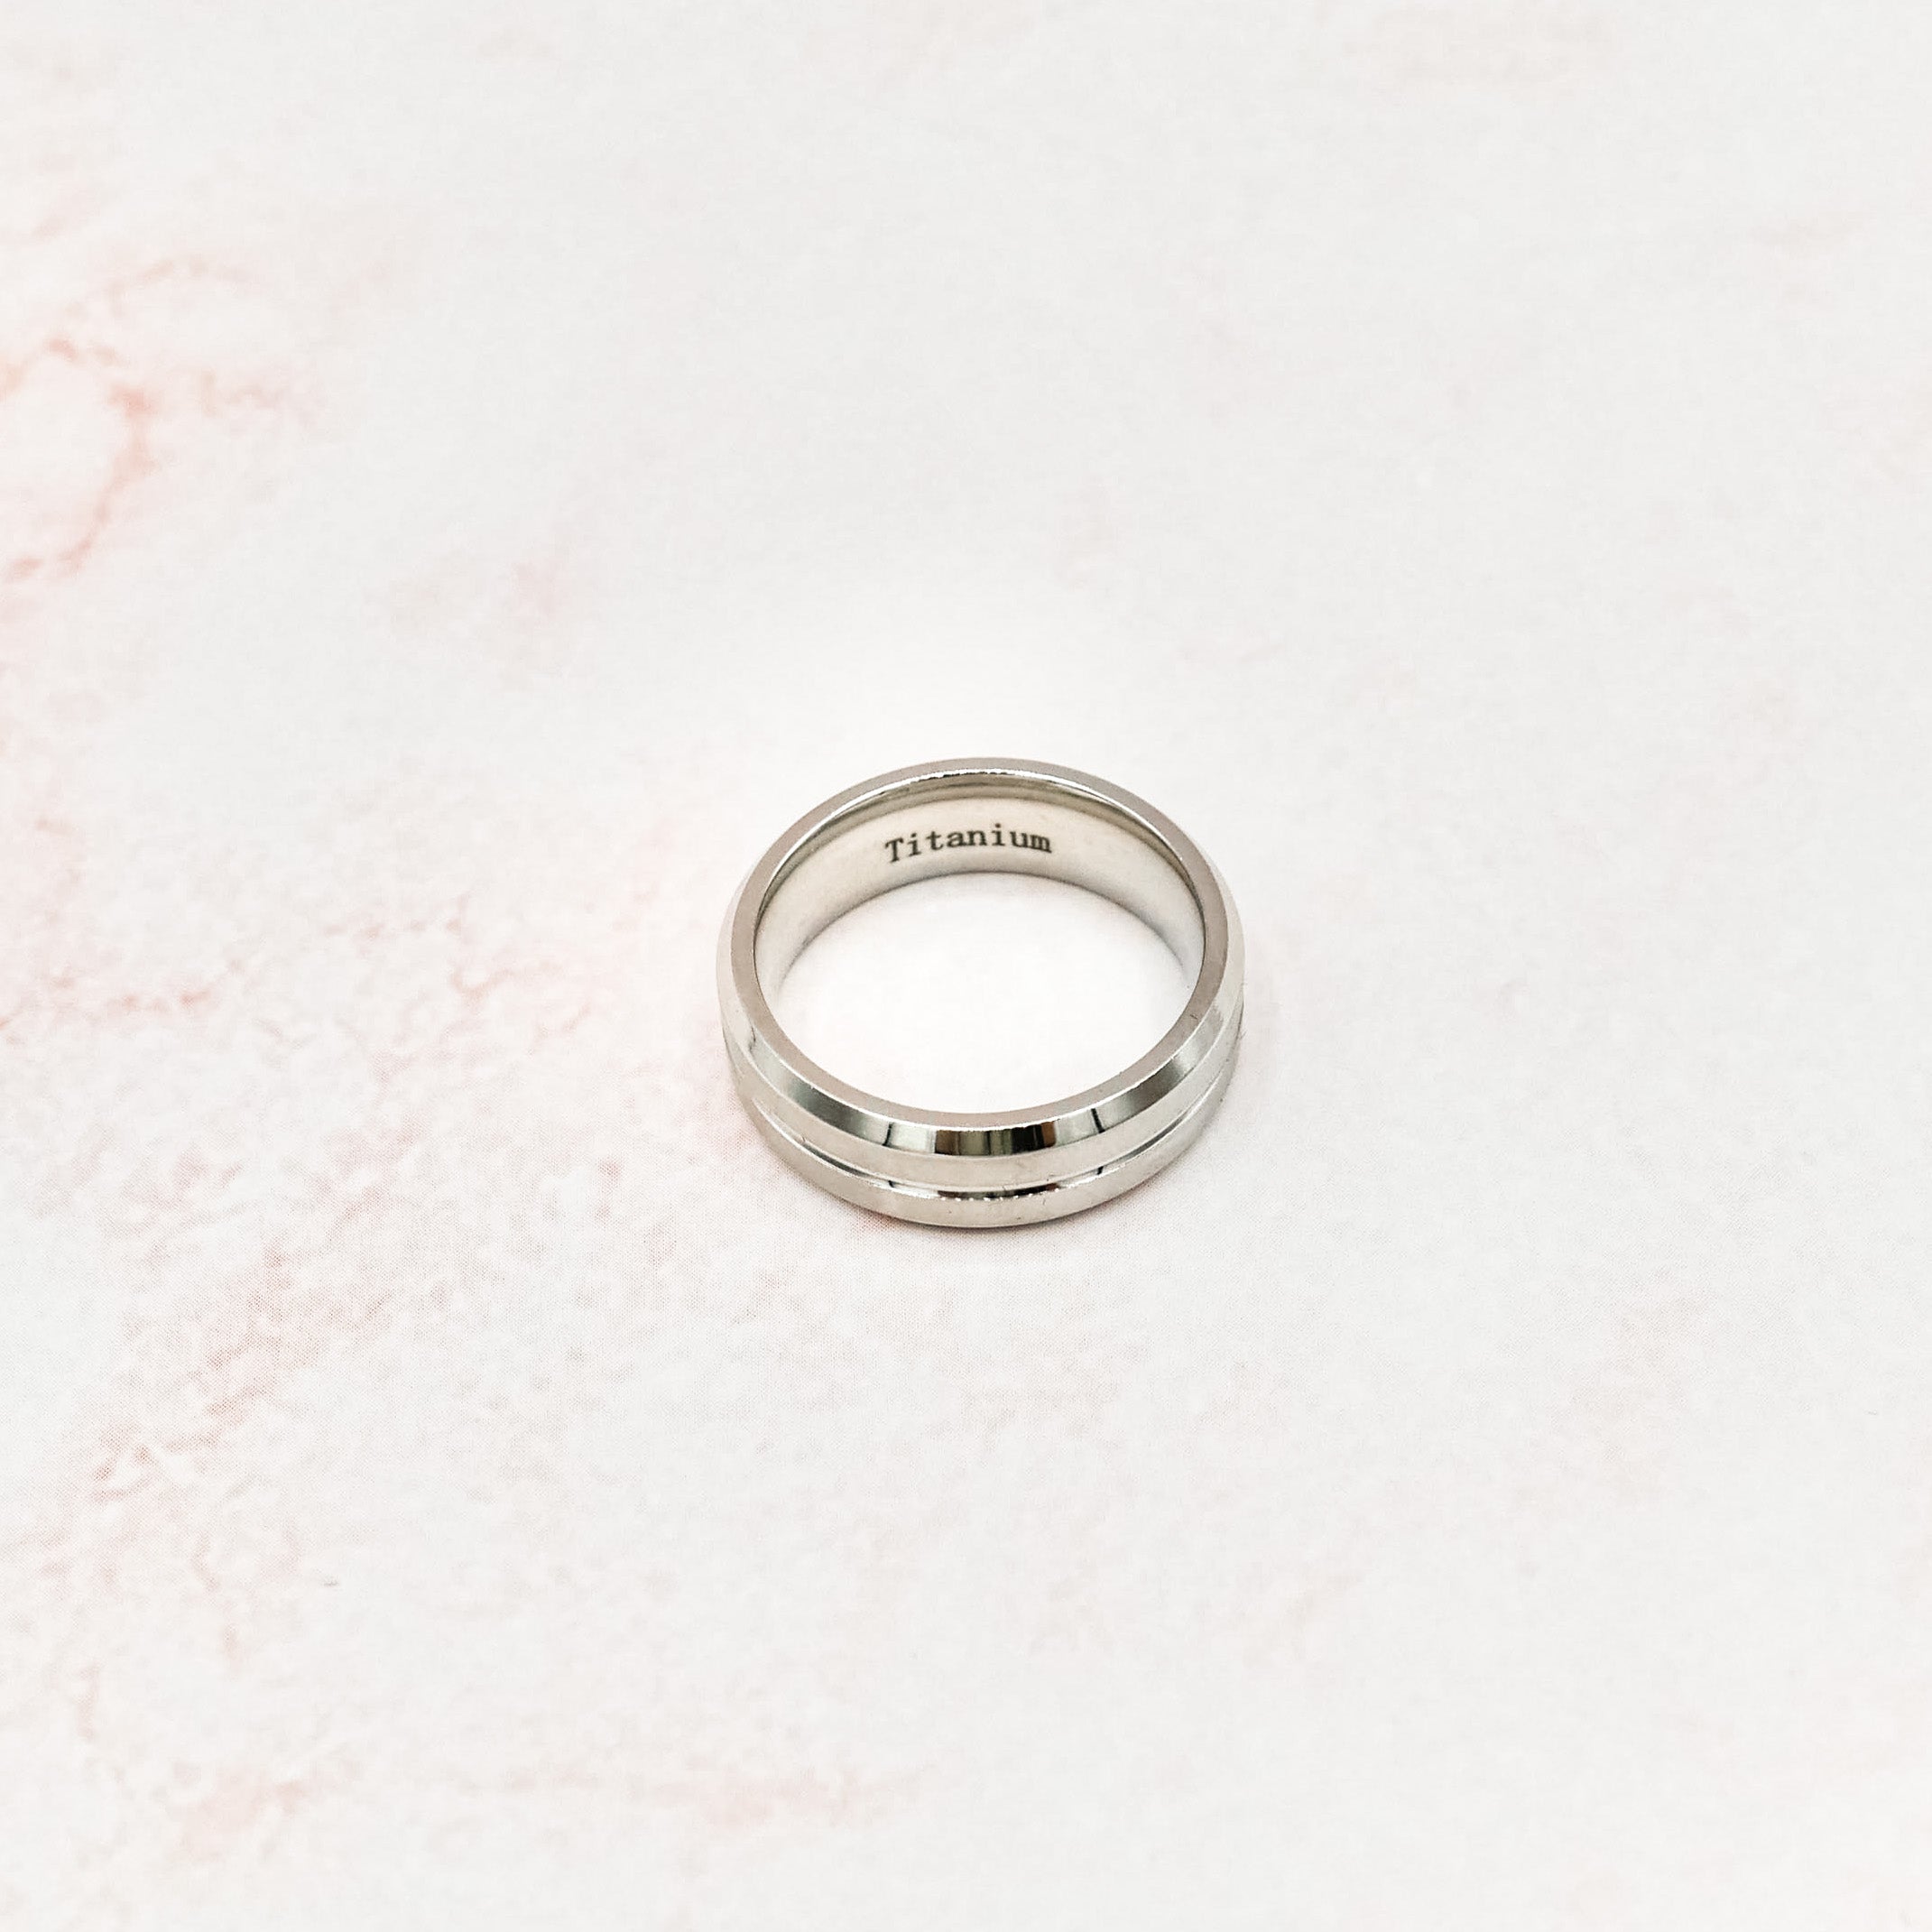 Titanium Silver Color Ring